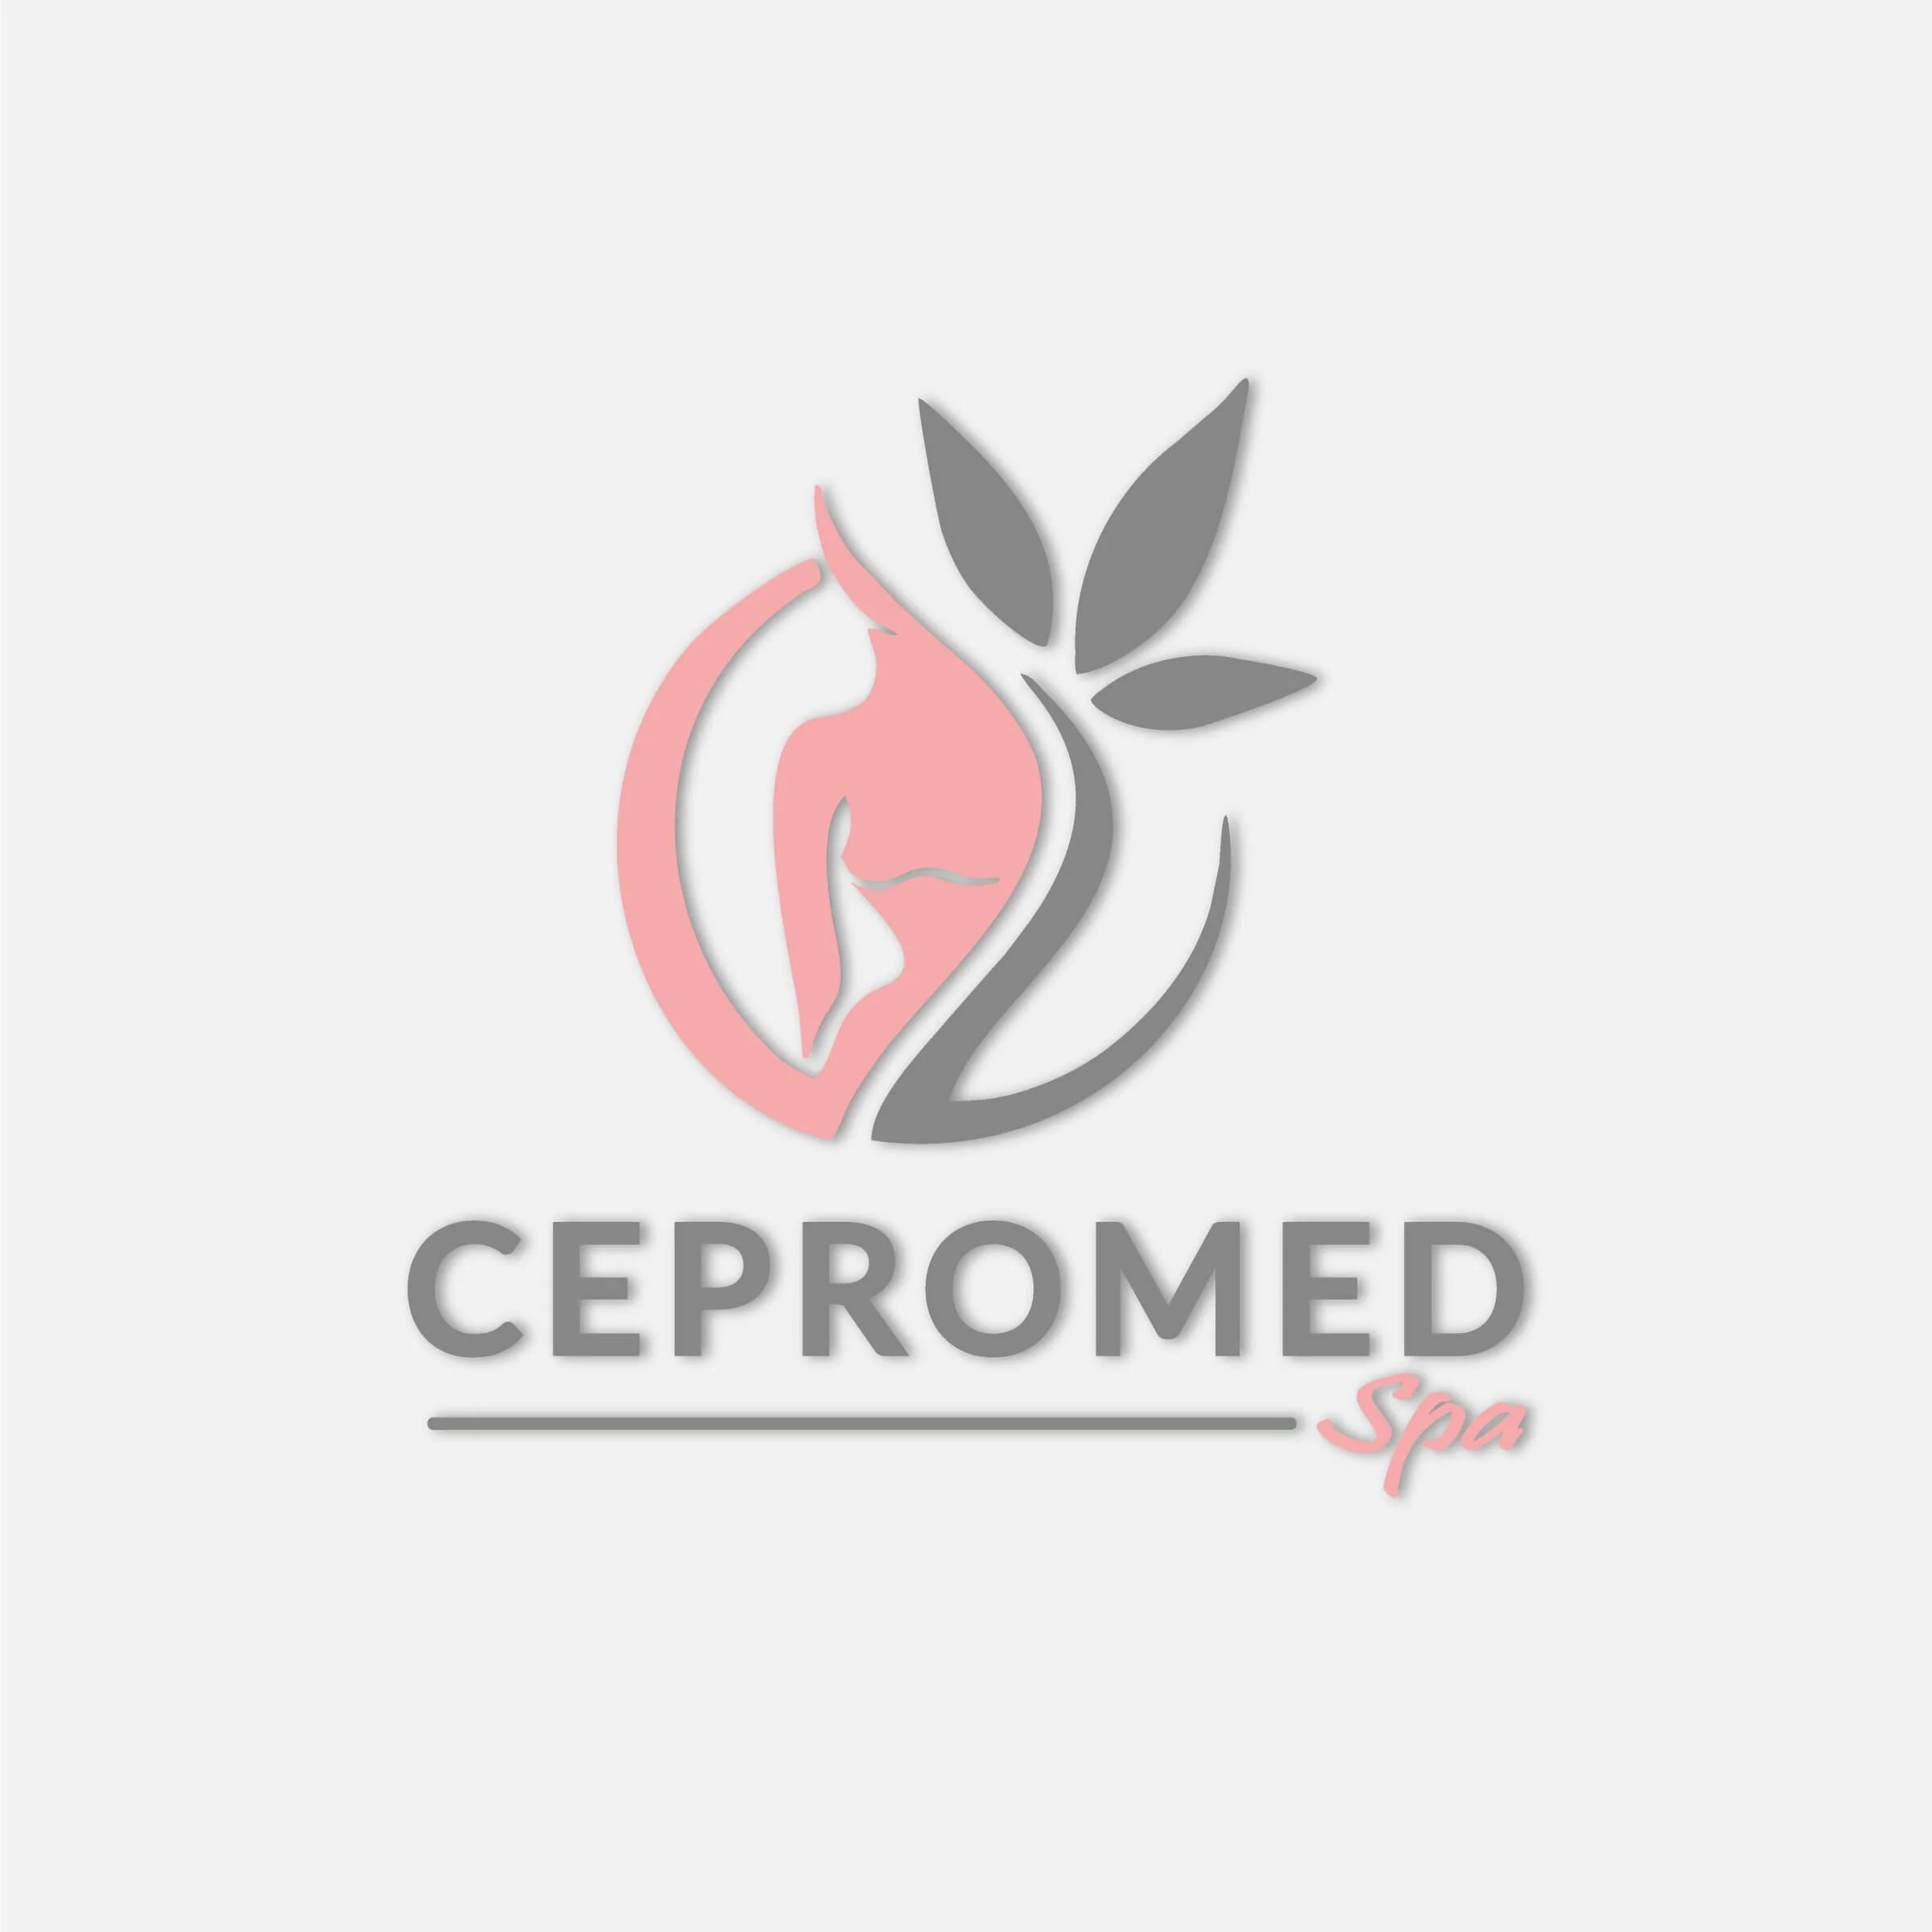 Spa-cepromed-spa-8448